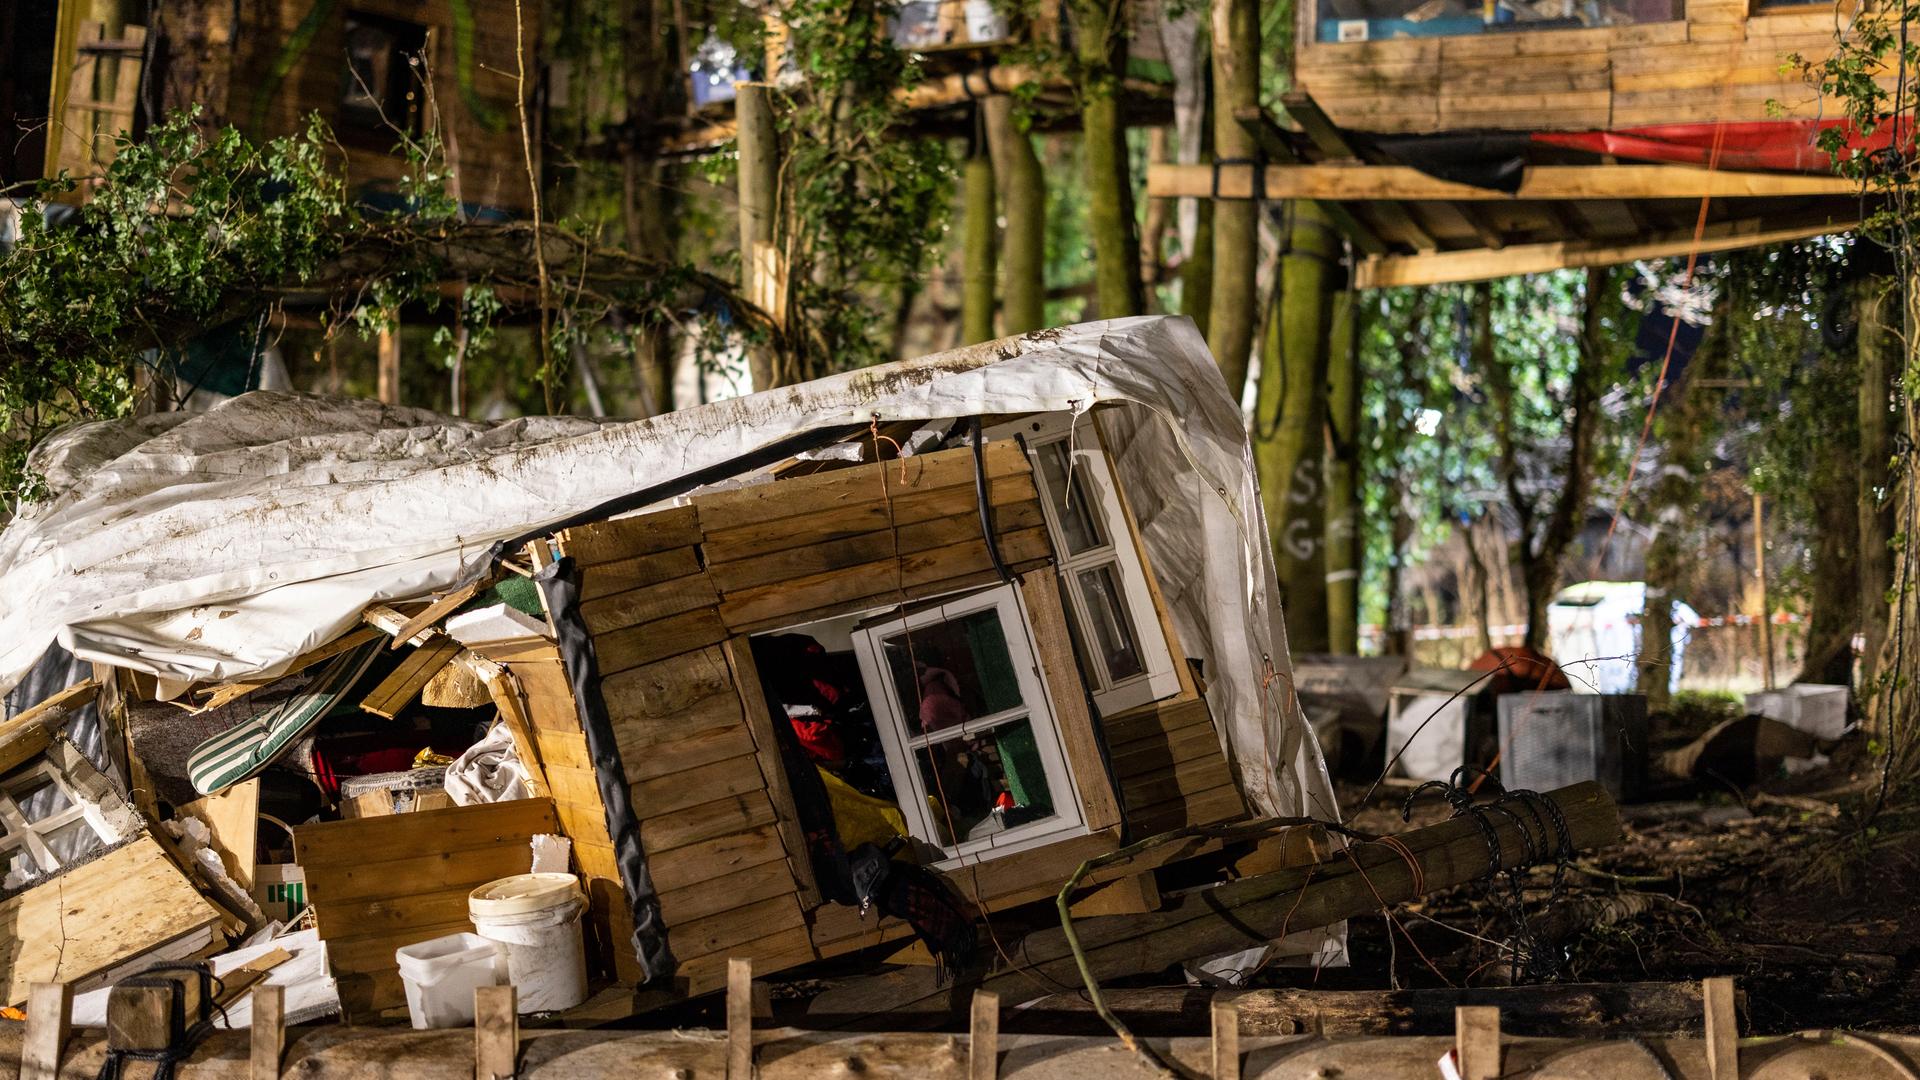 Am Montag nach den Protesten und der Räumung des ehemaligen Örtchens Lützerath liegt ein zerstörtes Baumhaus der Demonstrierenden auf dem Boden. 